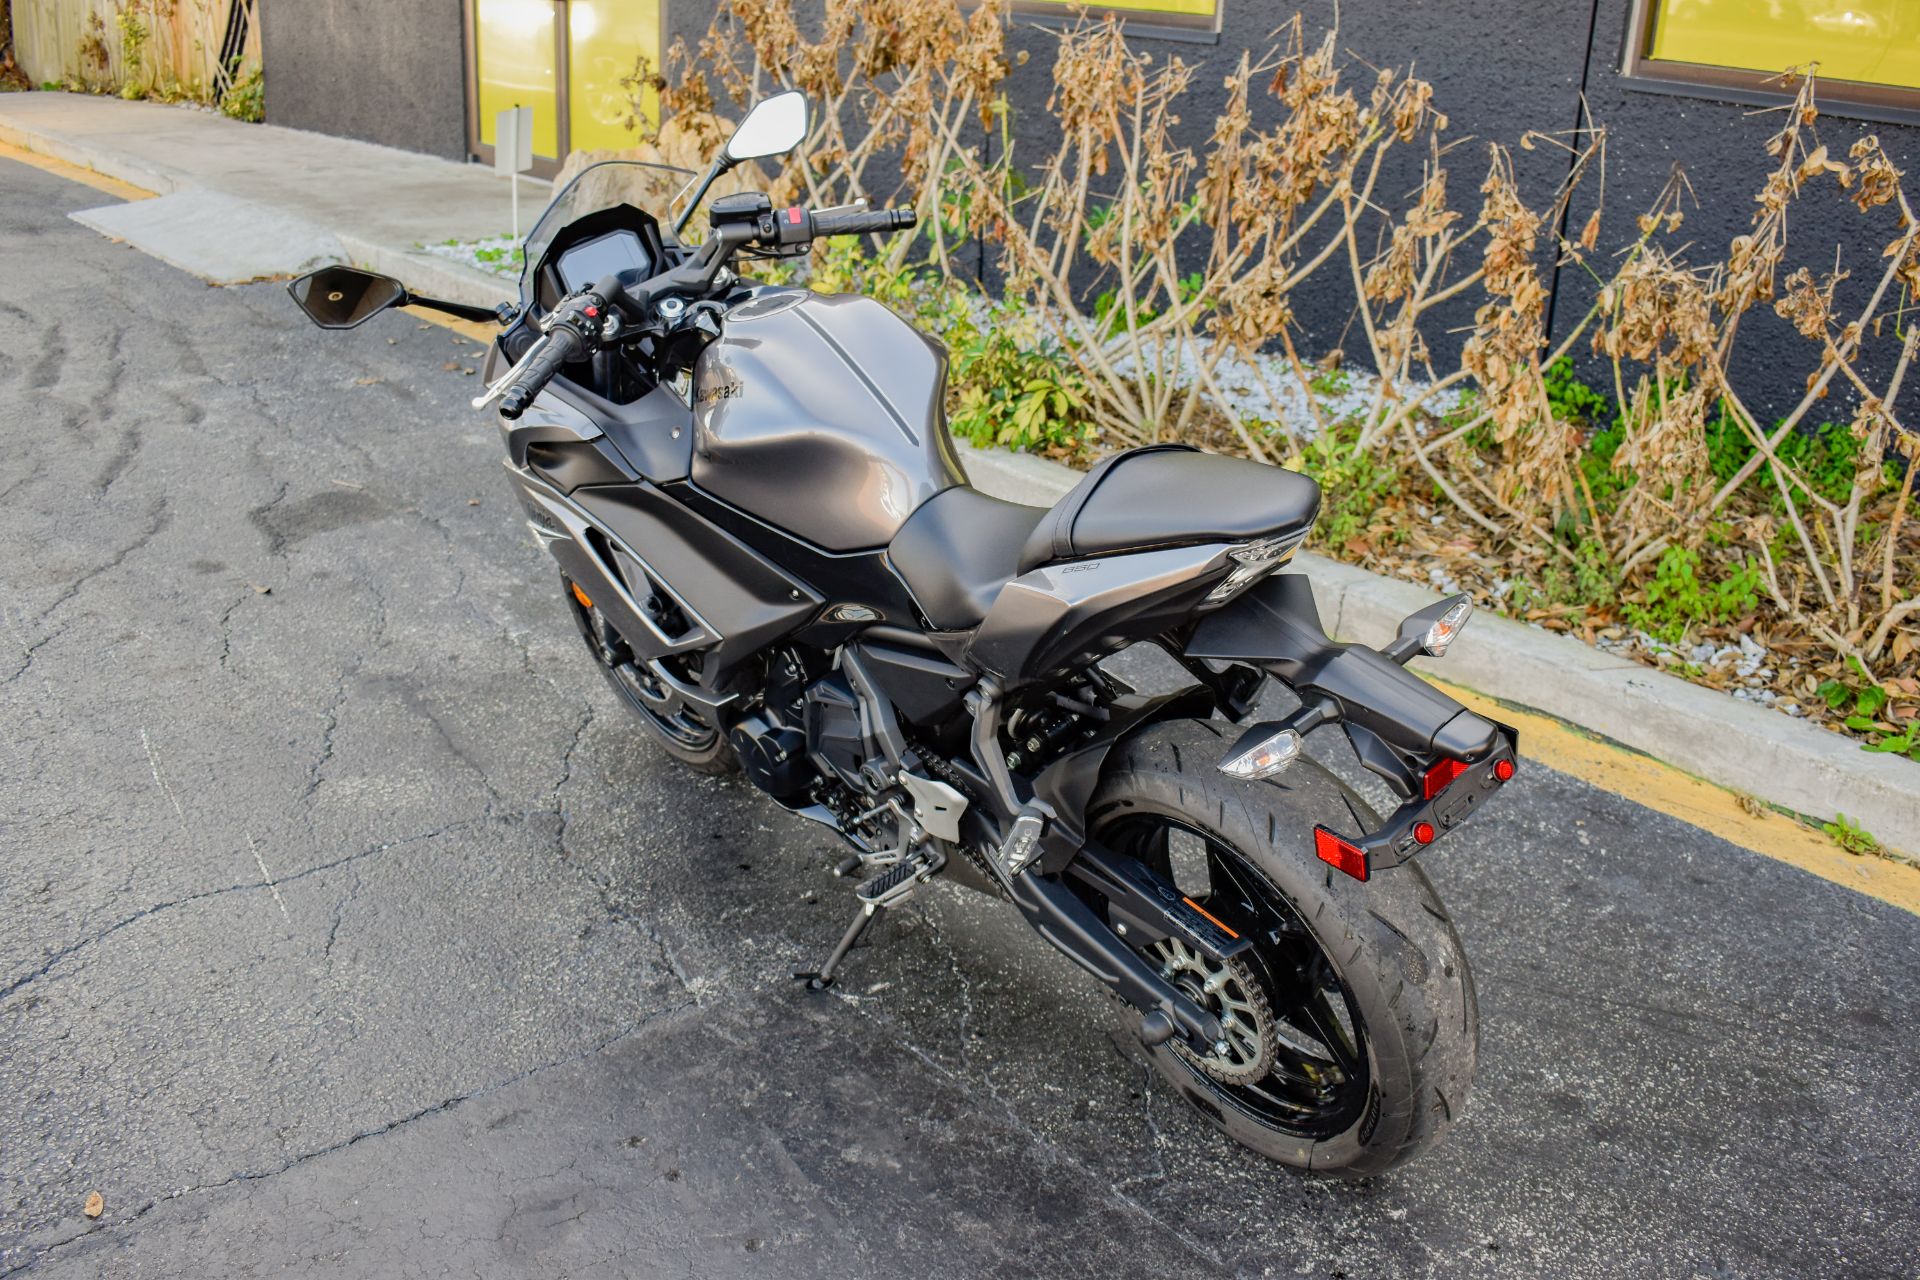 2021 Kawasaki Ninja 650 ABS in Jacksonville, Florida - Photo 17